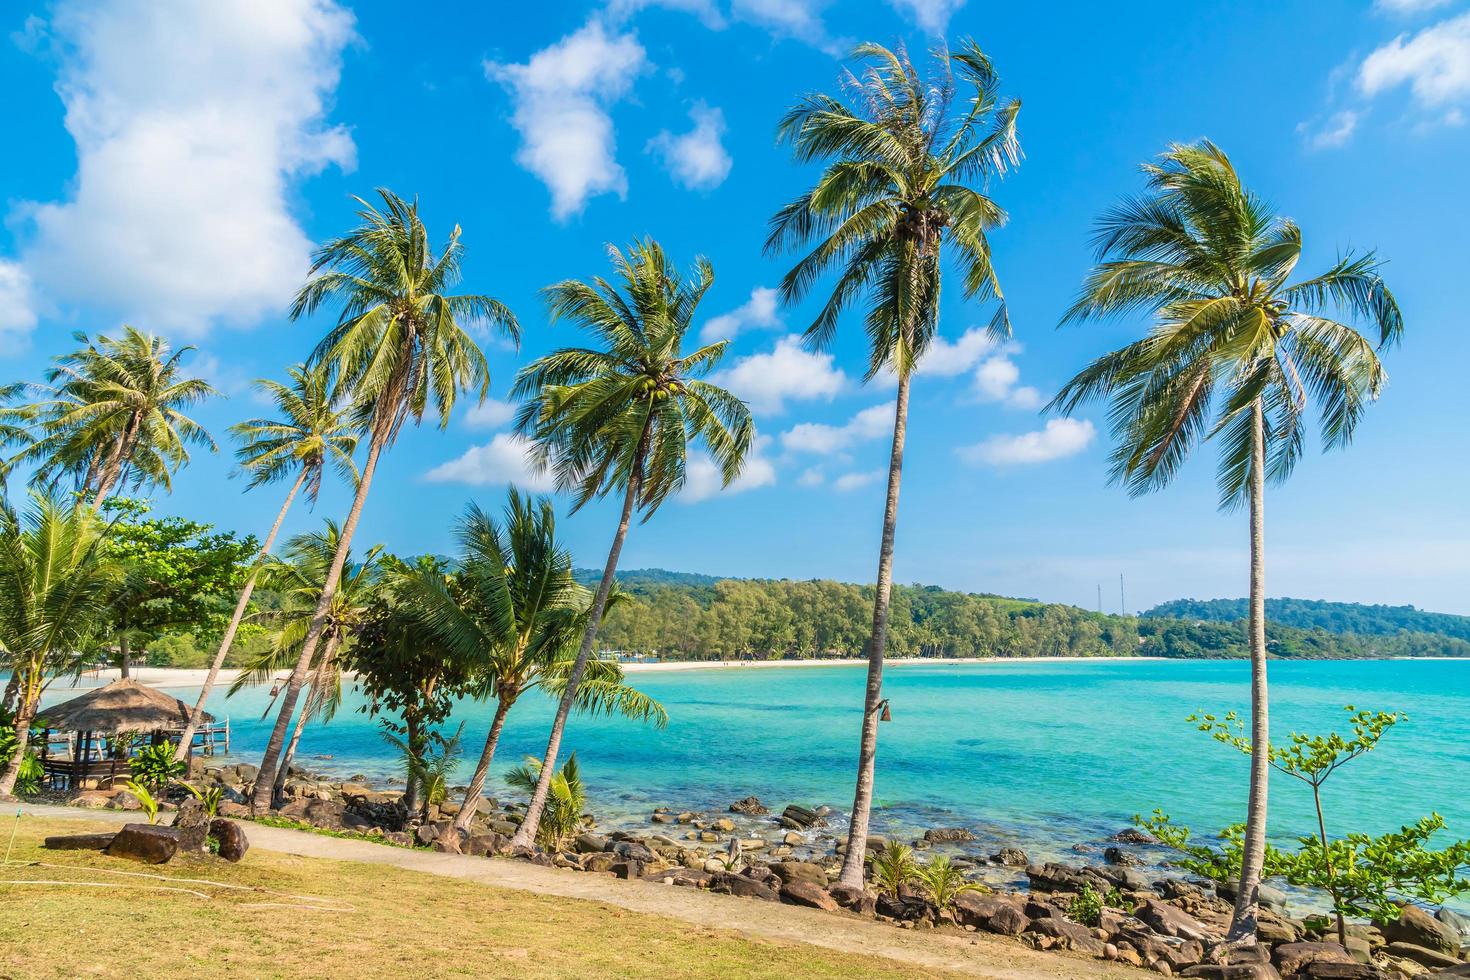 kokospalmer på stranden och havet foto